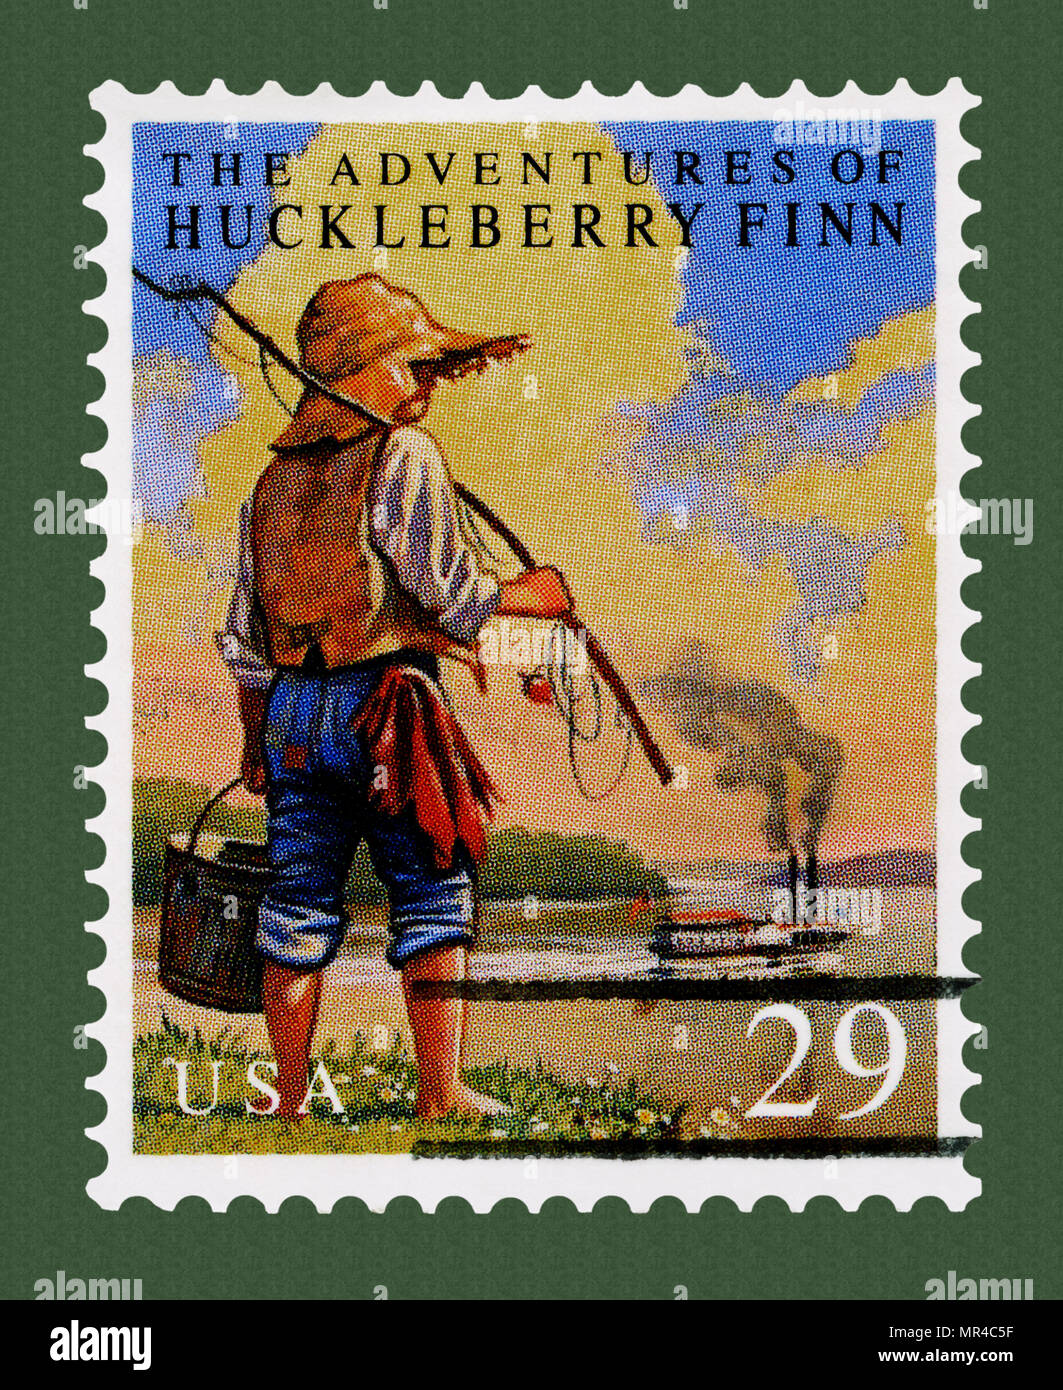 Die Abenteuer des Huckleberry Finn Stempel: Kinder- und Jugendliteratur klassische Bücher auf Briefmarken. Stockfoto